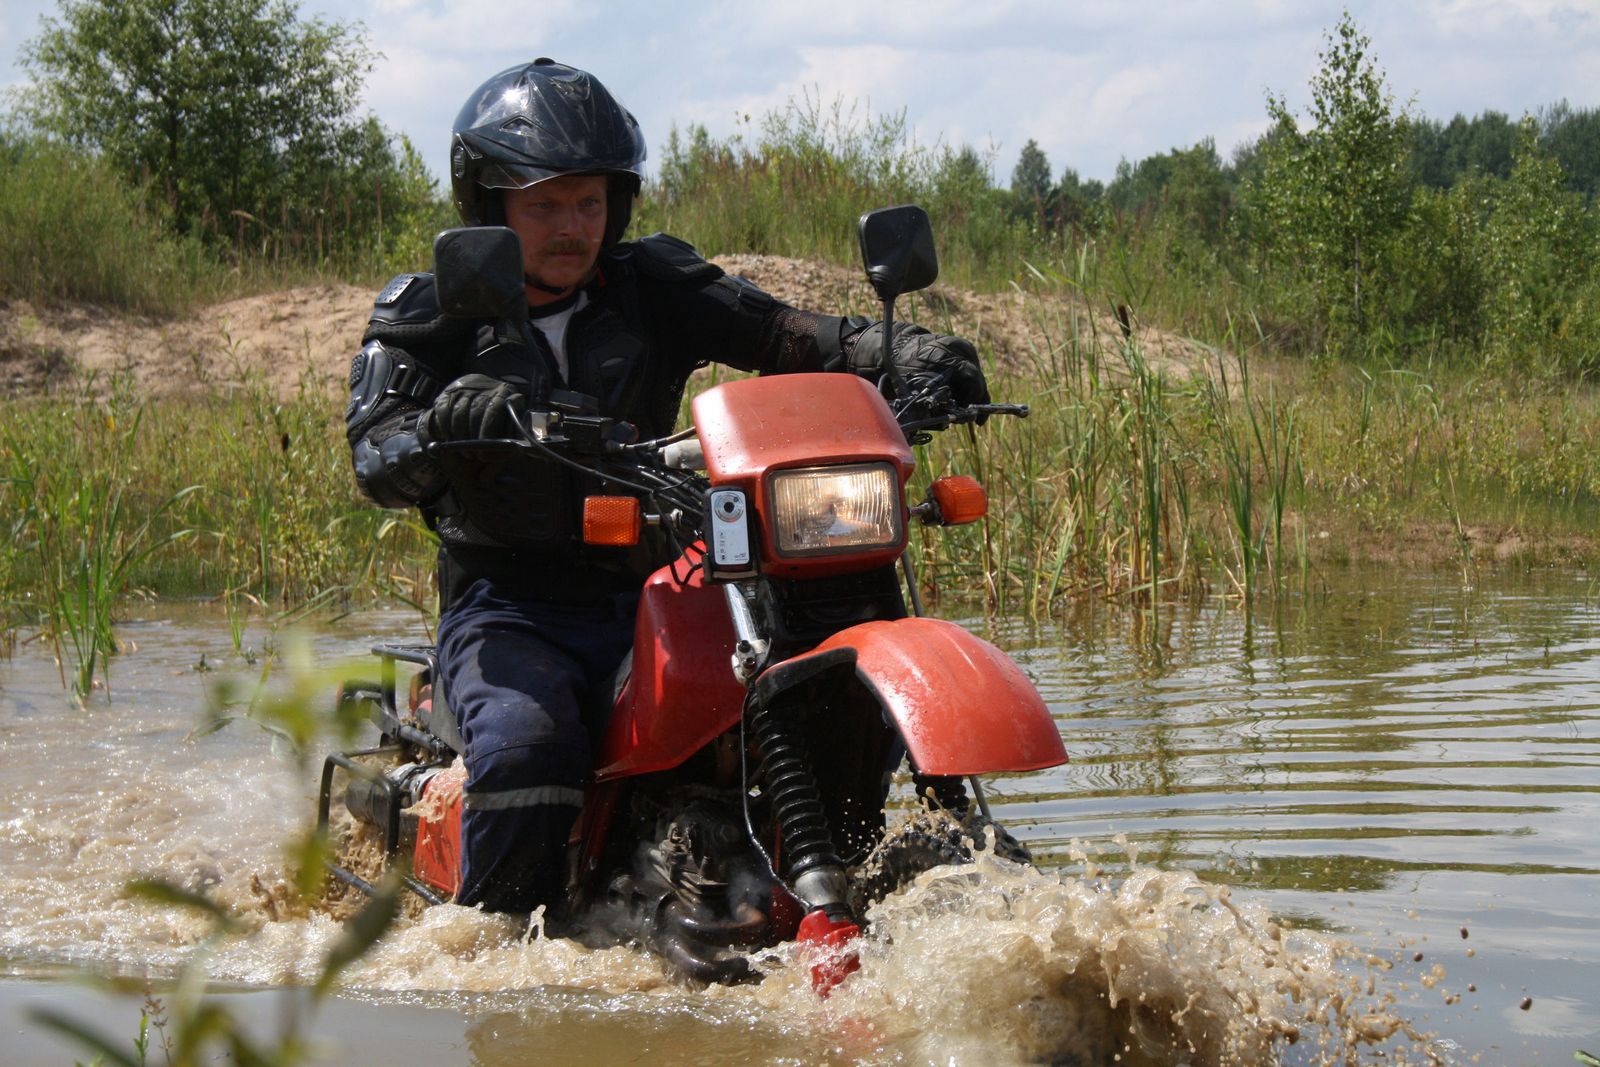 honda xlr in water. Belarus